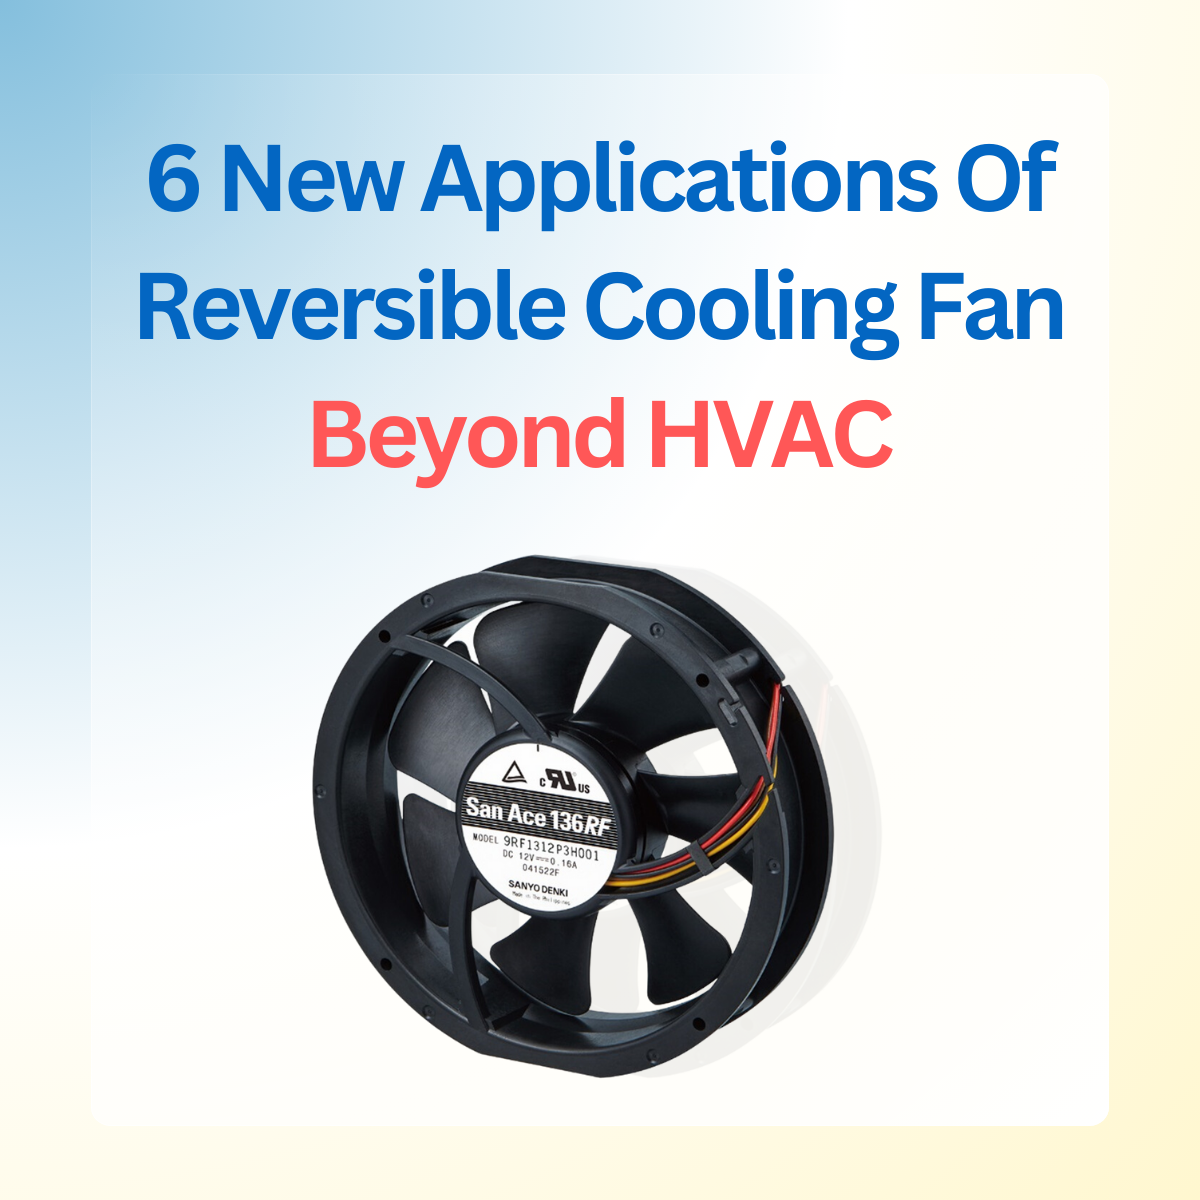 Reversible Flow Fan Applications beyond HVAC